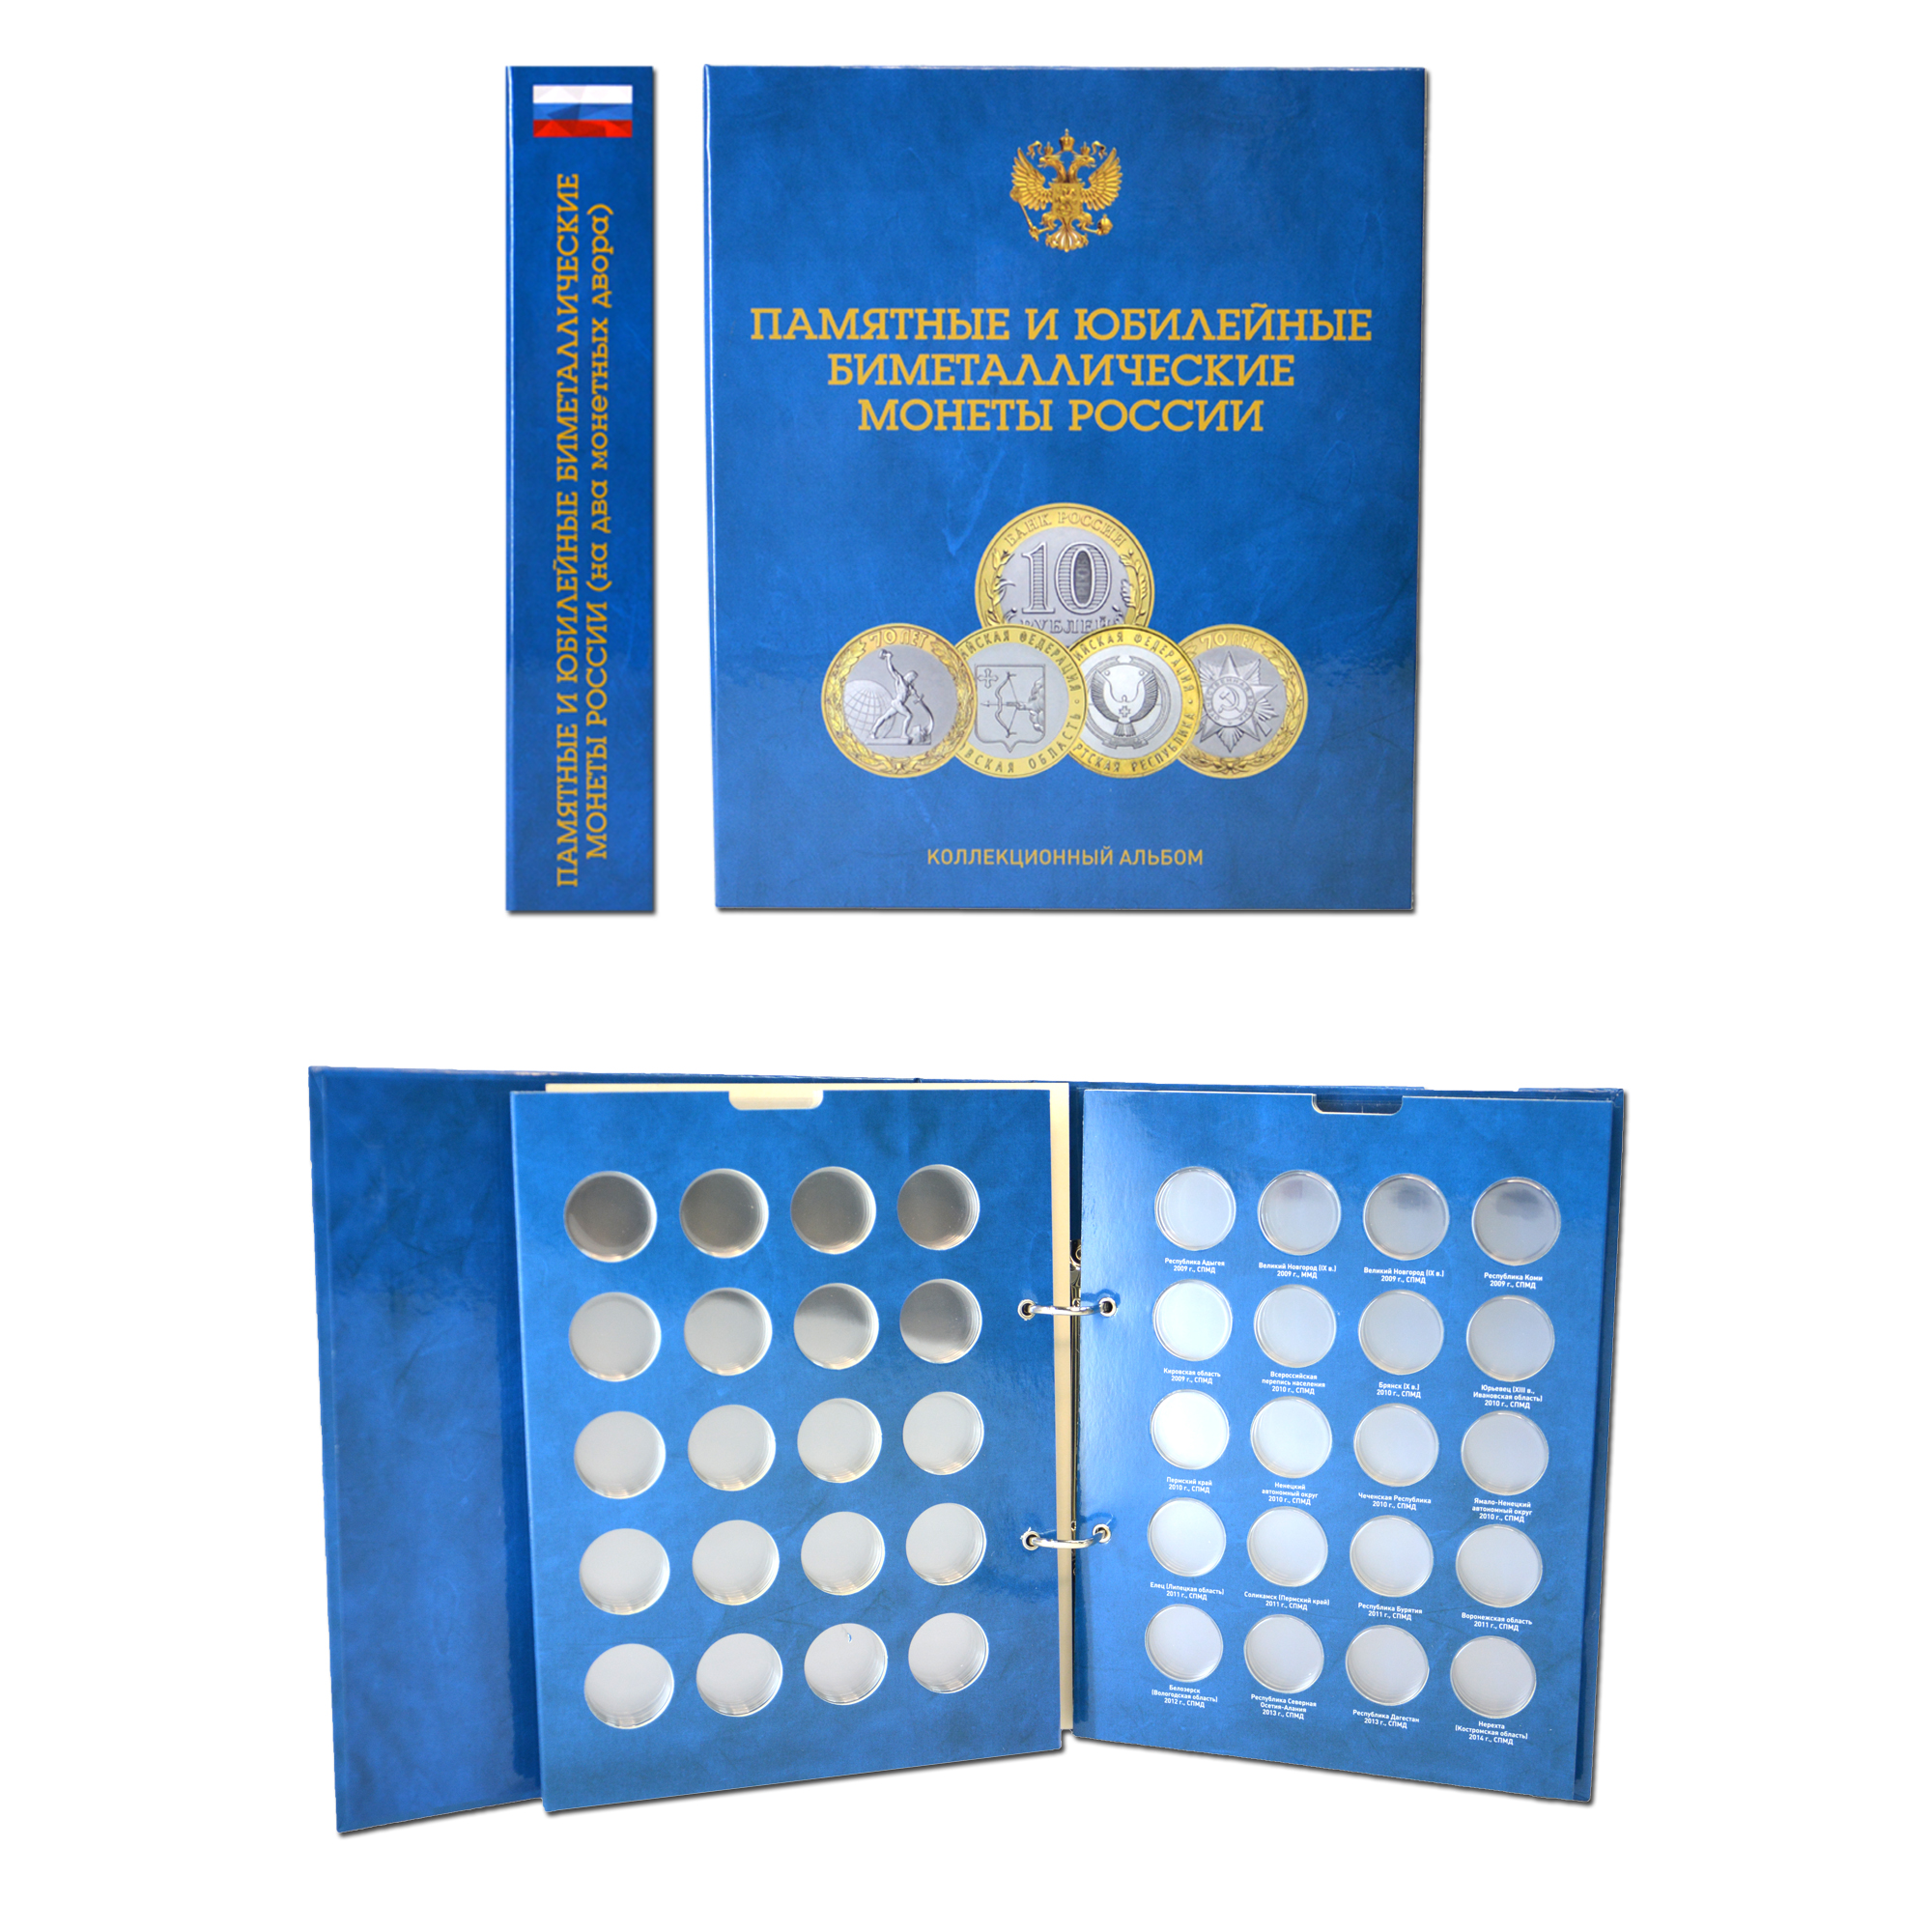 Купить капсульный альбом-книга со съемными листами для 140 монет 10 рублей (биметалл) на два монетных двора, фото 